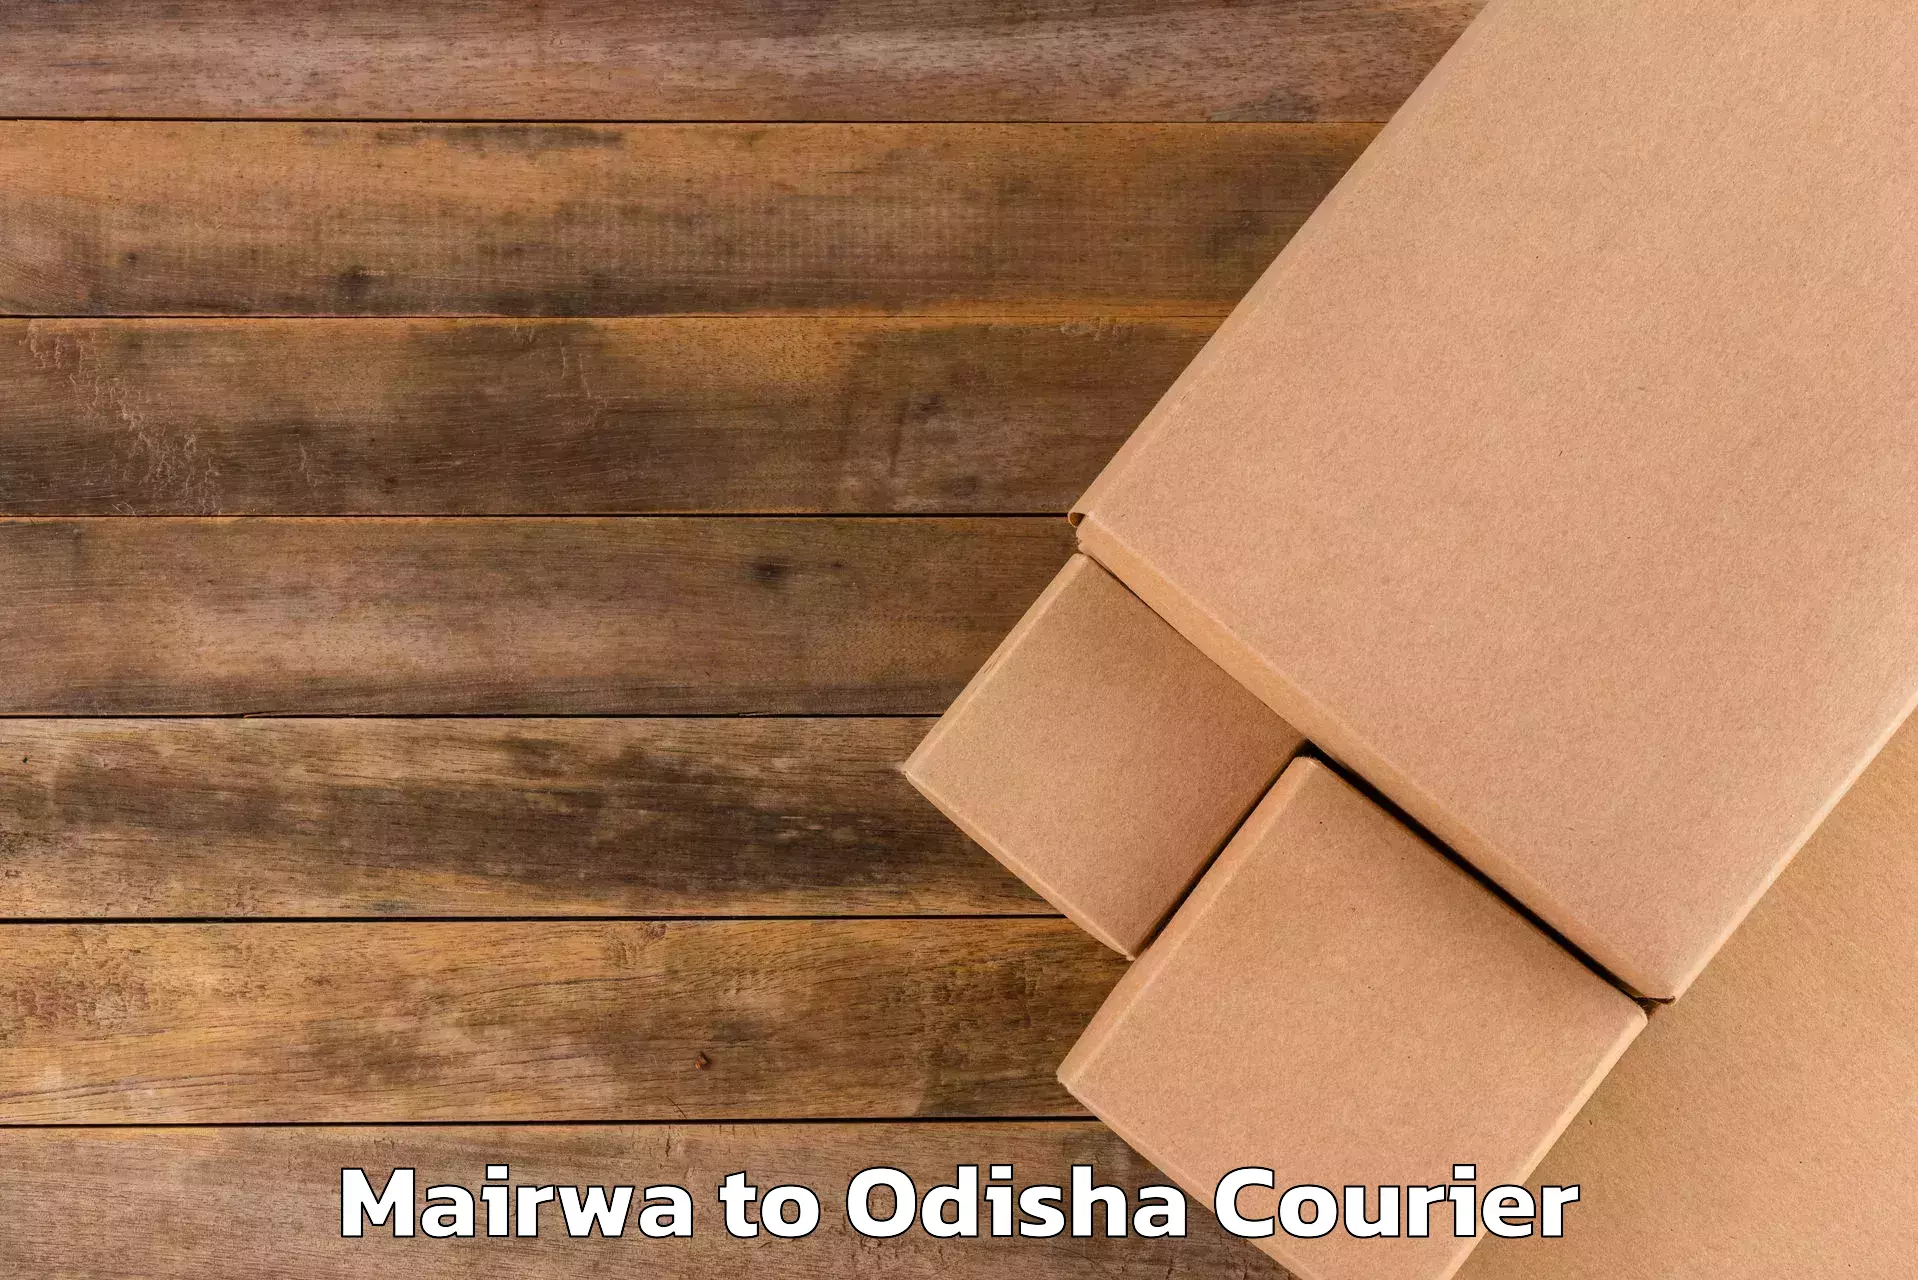 Luggage courier rates calculator Mairwa to Sambalpur